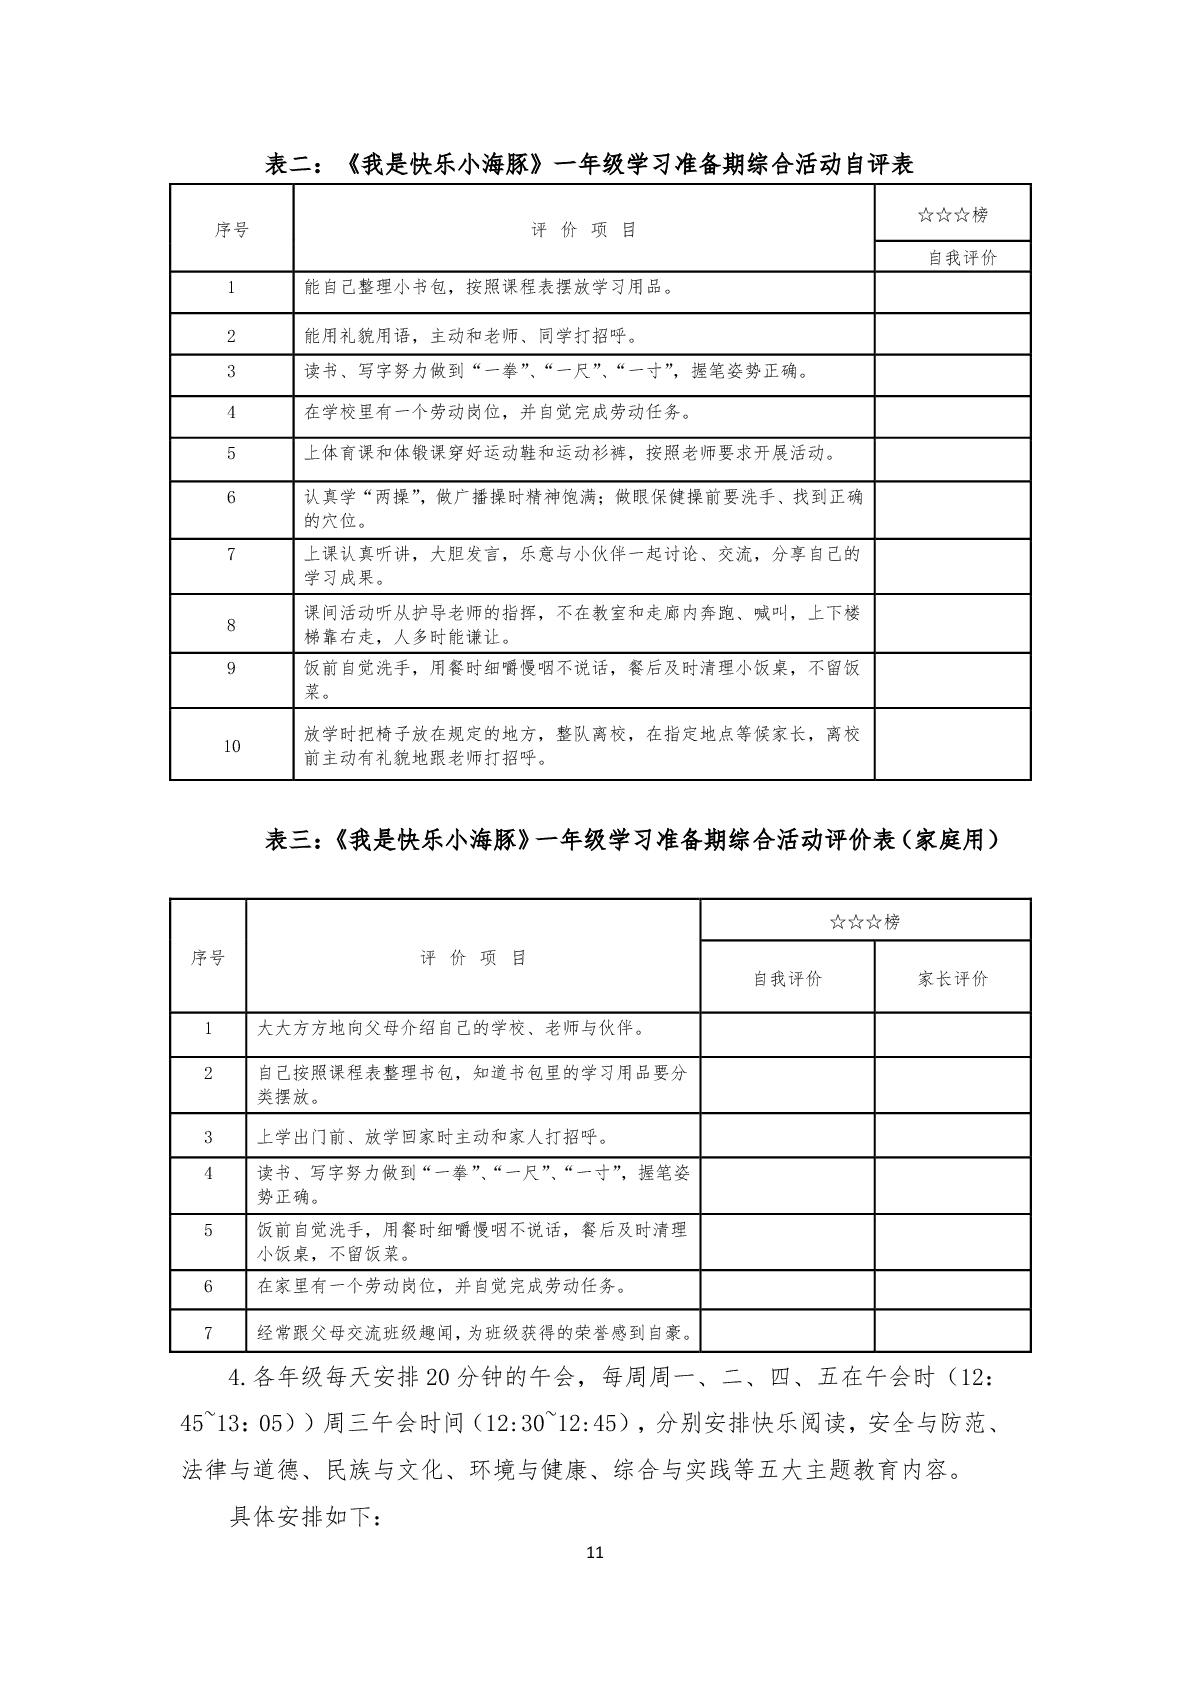 2.上海市嘉定区清水路小学2020学年度课程计划-011.jpg